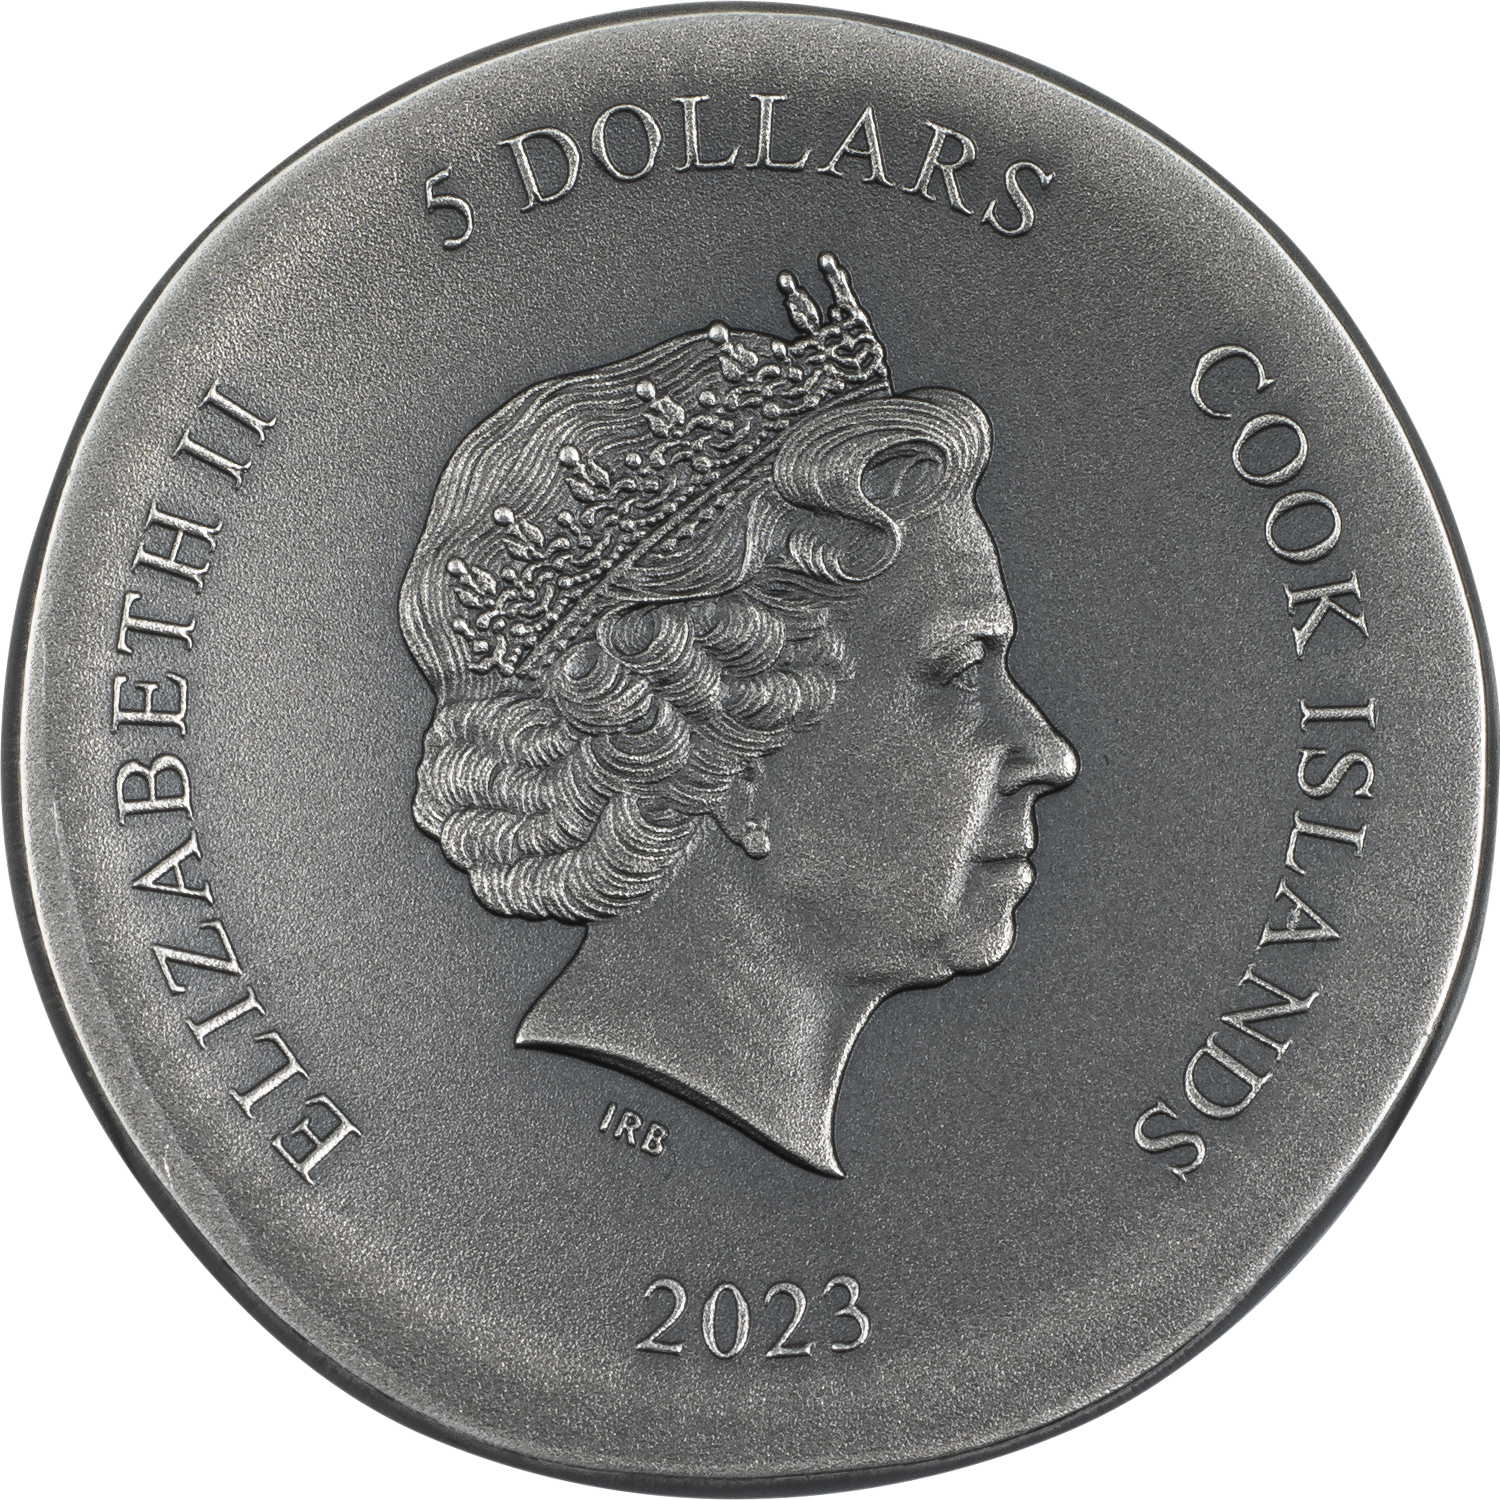 ARETHUSA 1 Oz Silver Coin $5 Cook Islands 2023